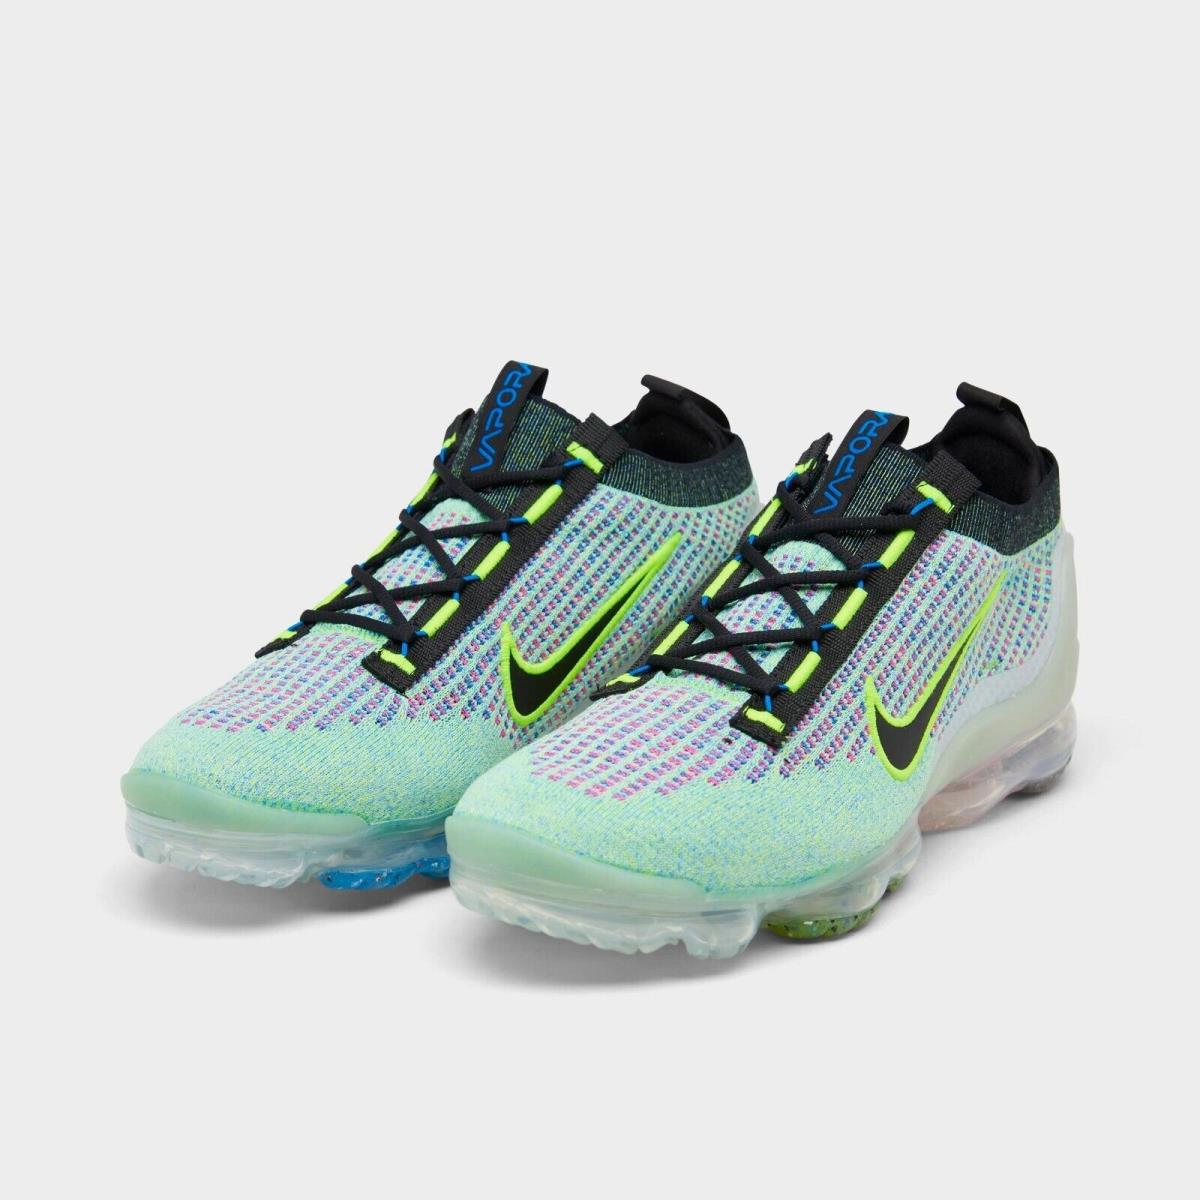 Nike Air Vapormax 2021 Flyknit Running Shoes Volt / Blue / Sil Sz 9 DX3368 700